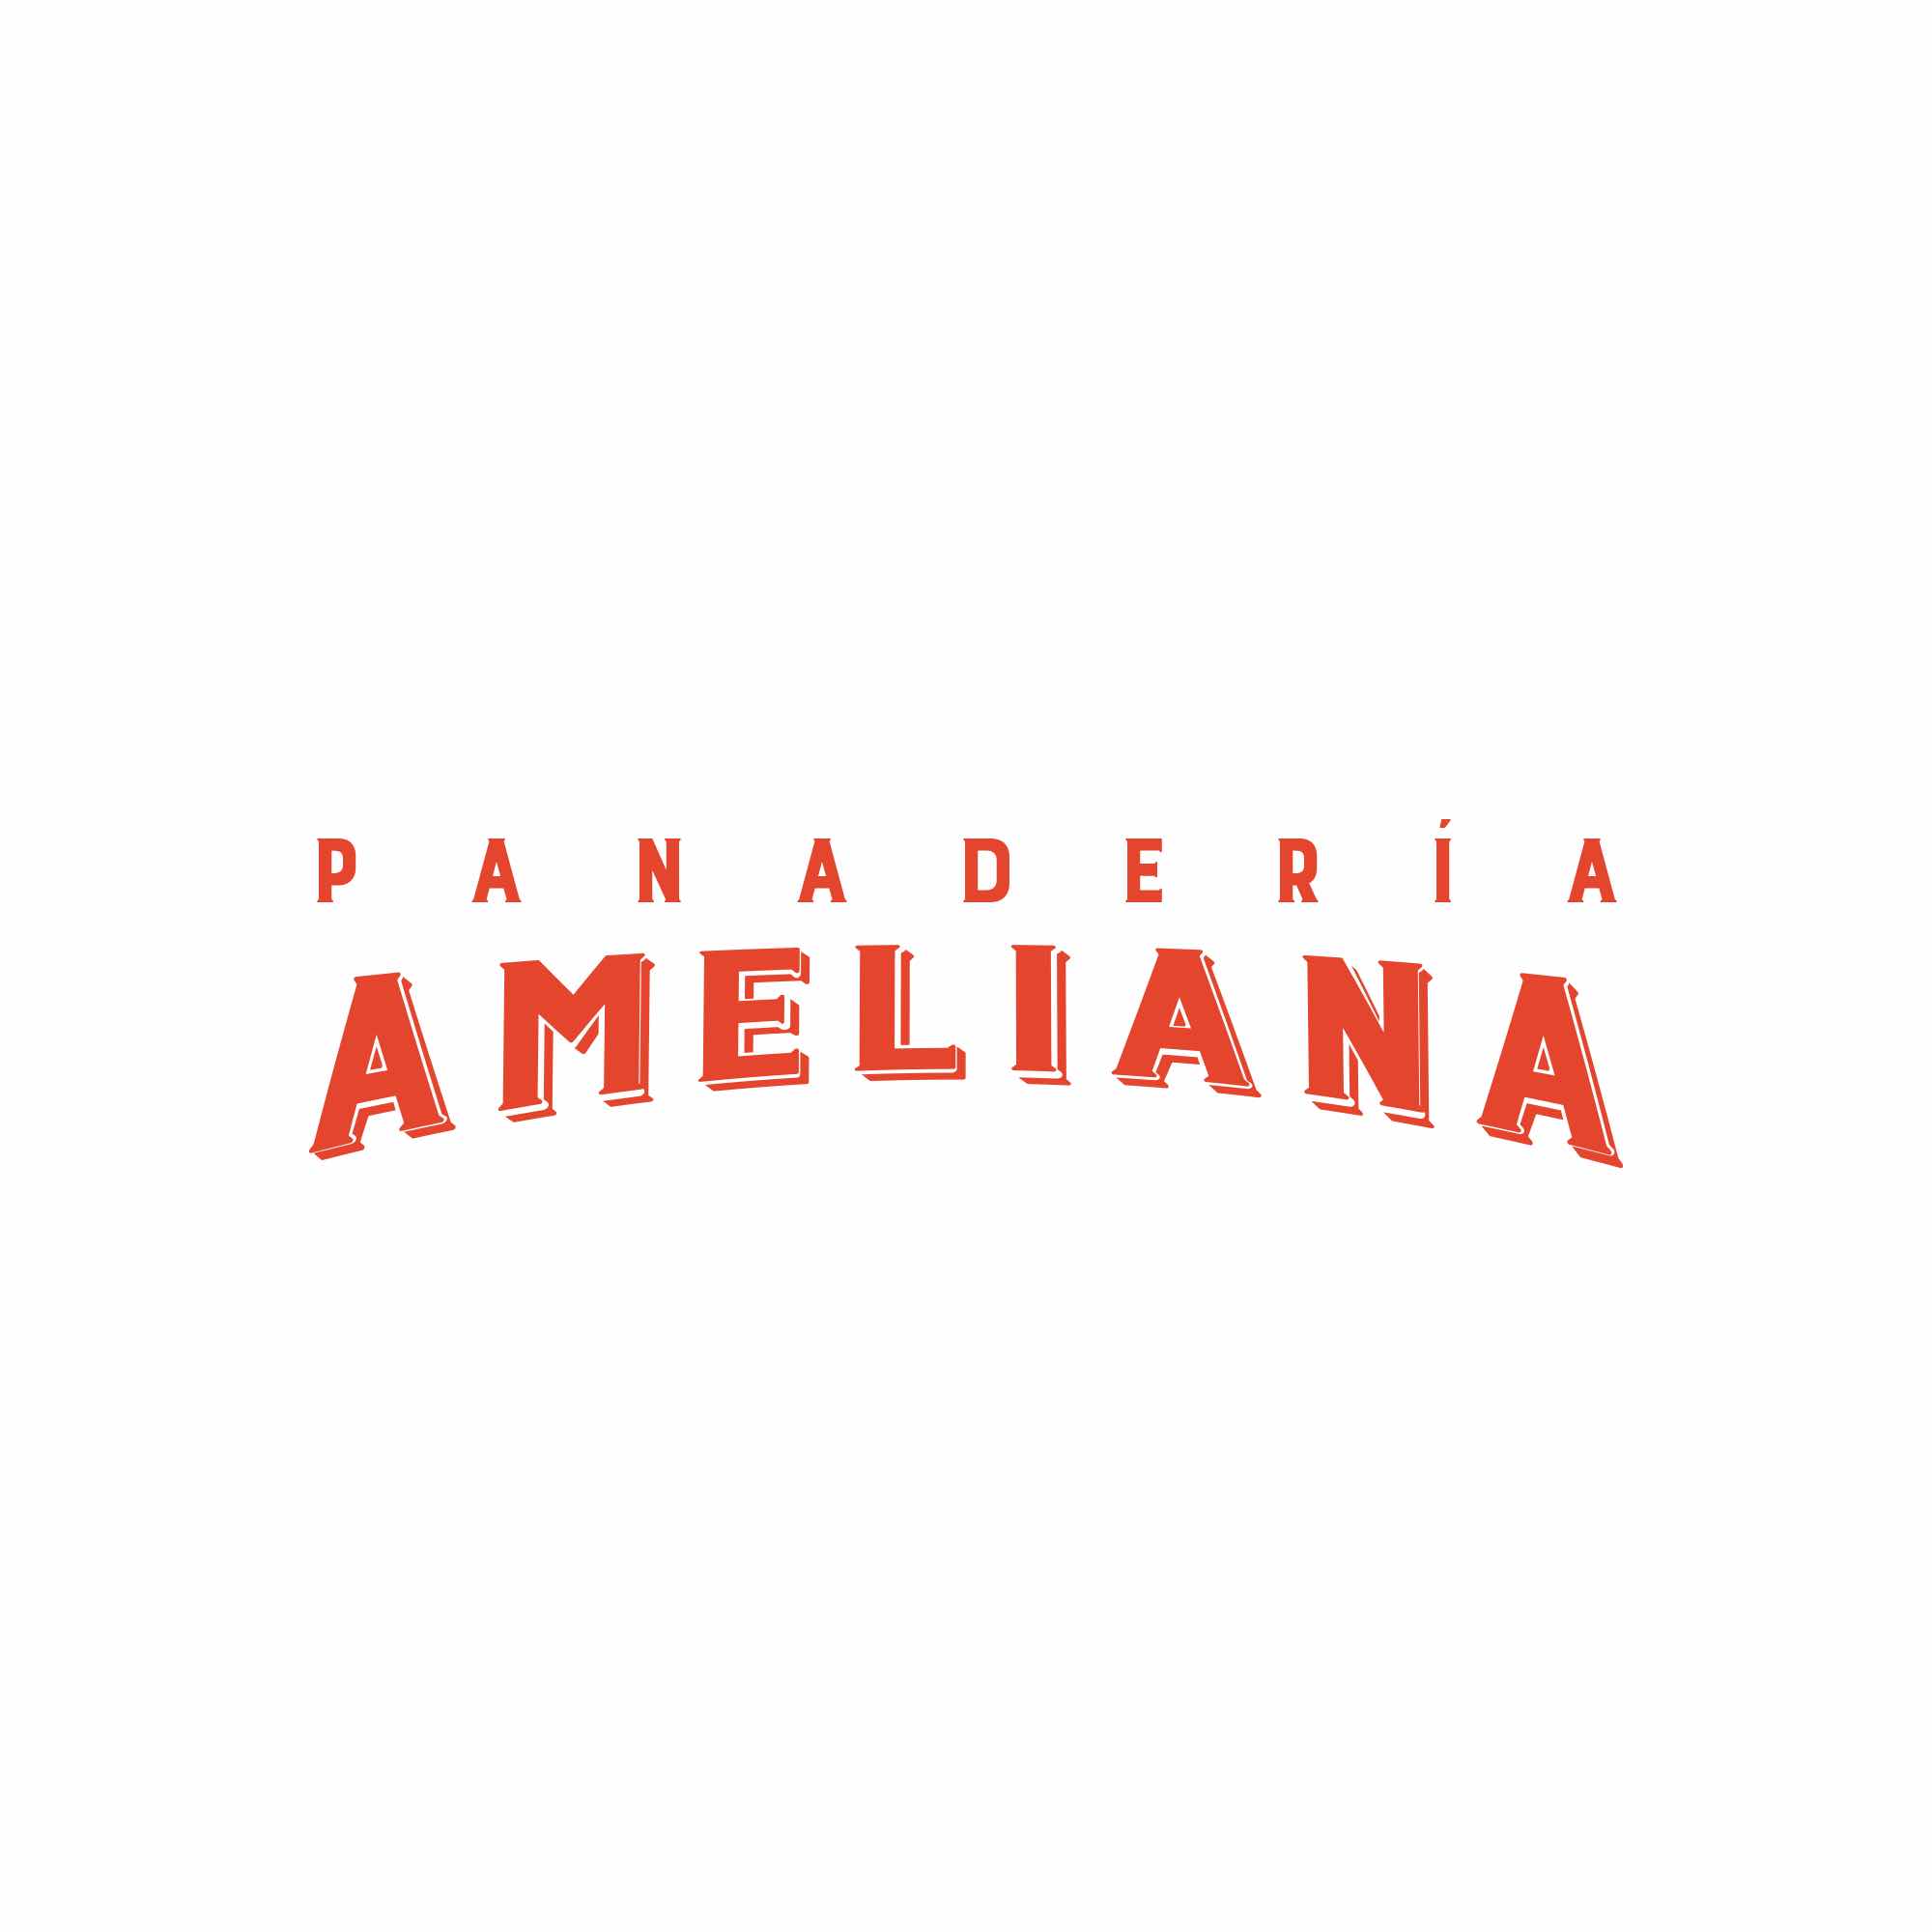 Panadería Ameliana